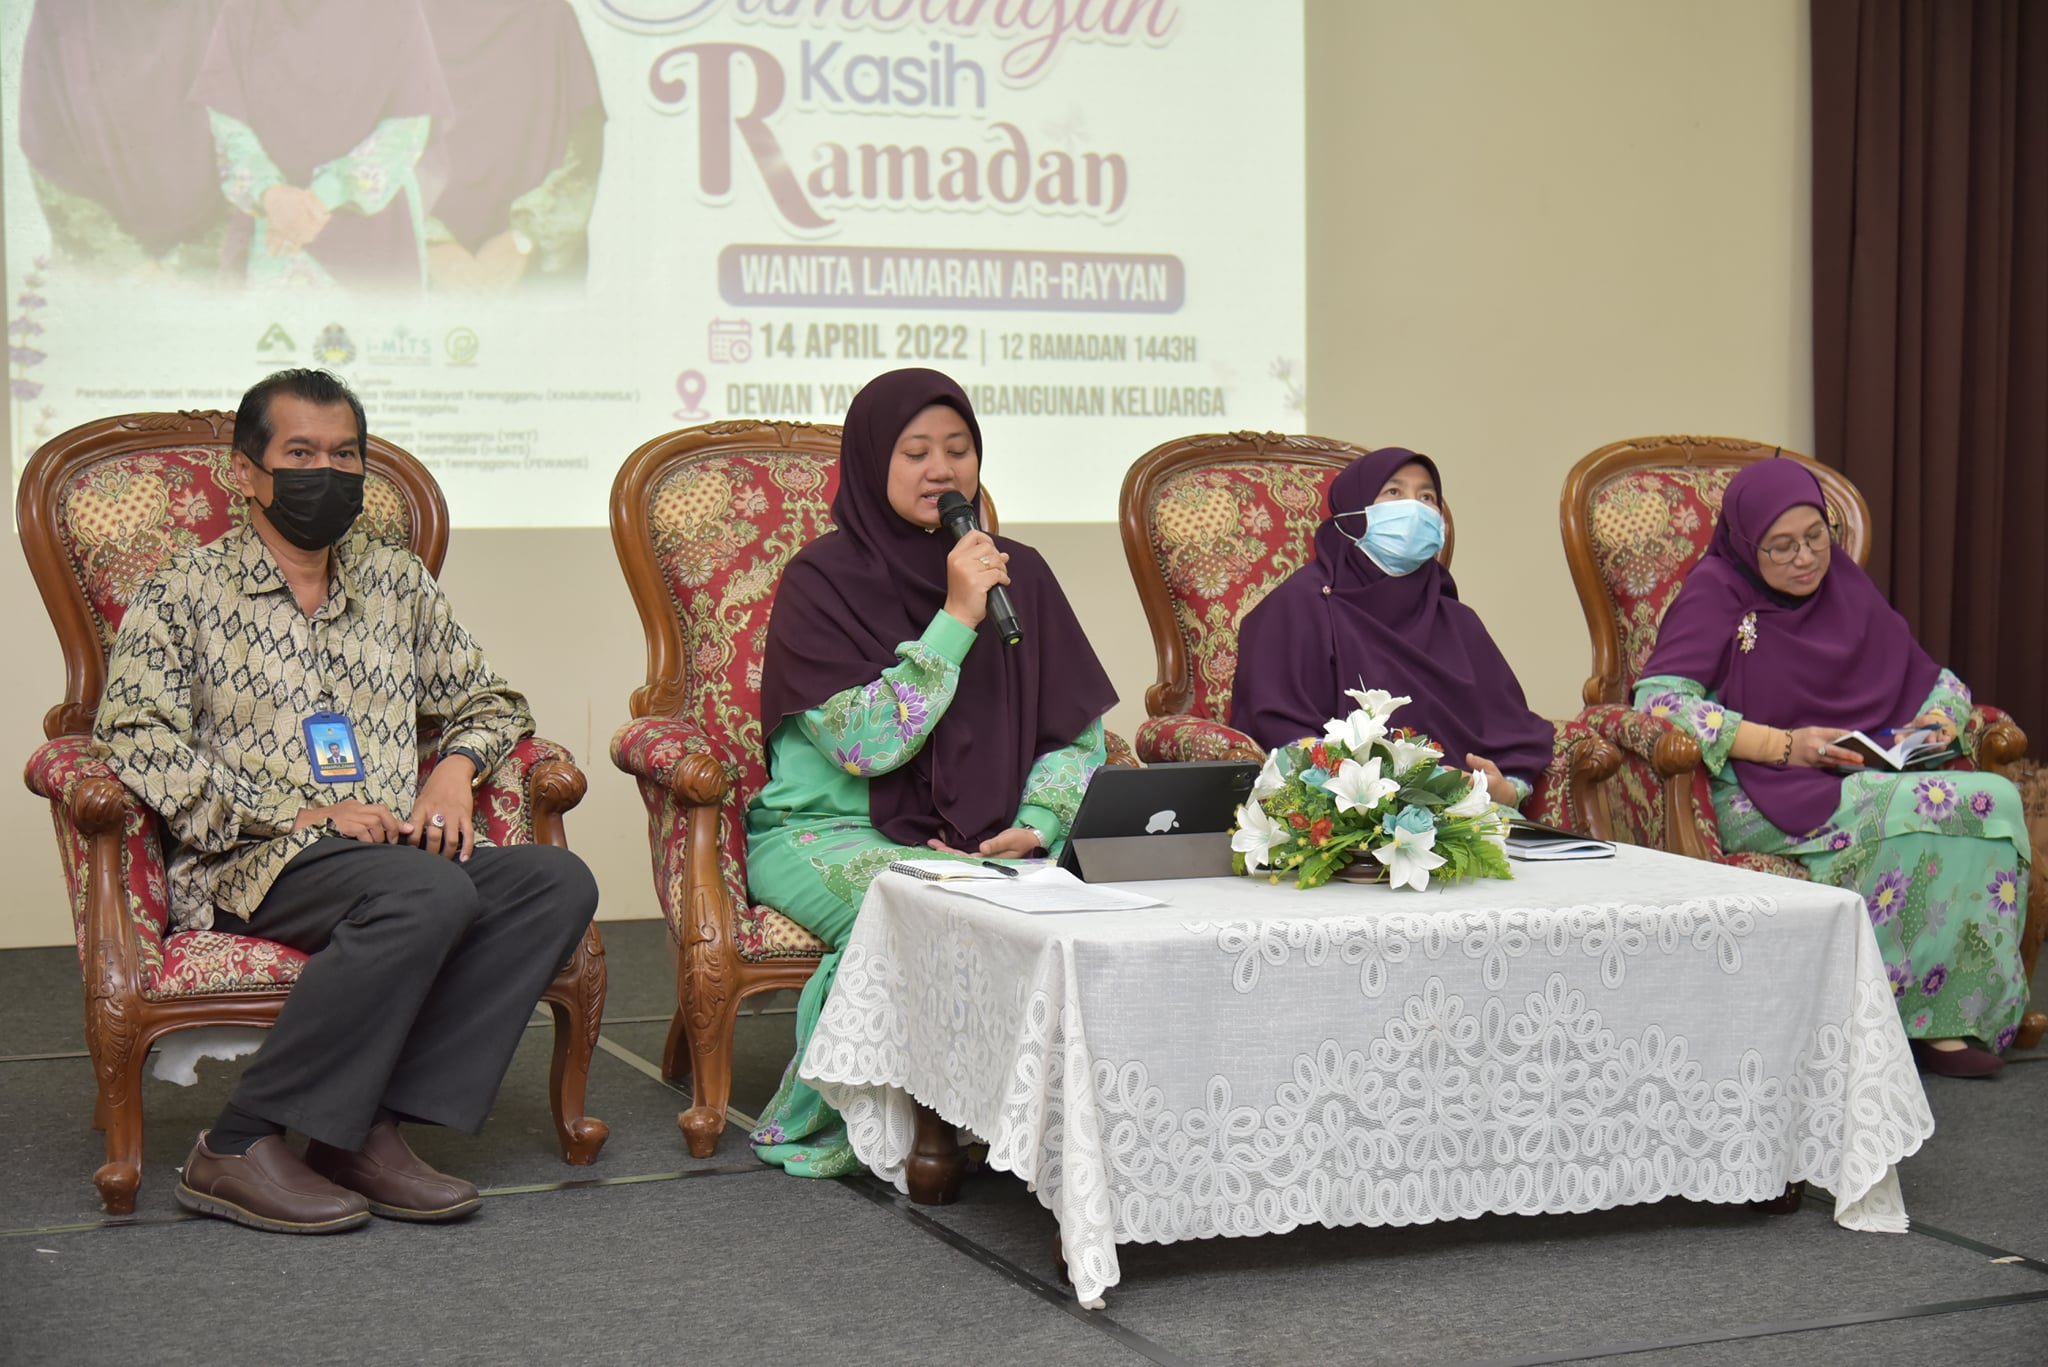 Sumbangan Kasih Ramadhan Wanita Lamaran Ar-Rayyan K.Terengganu